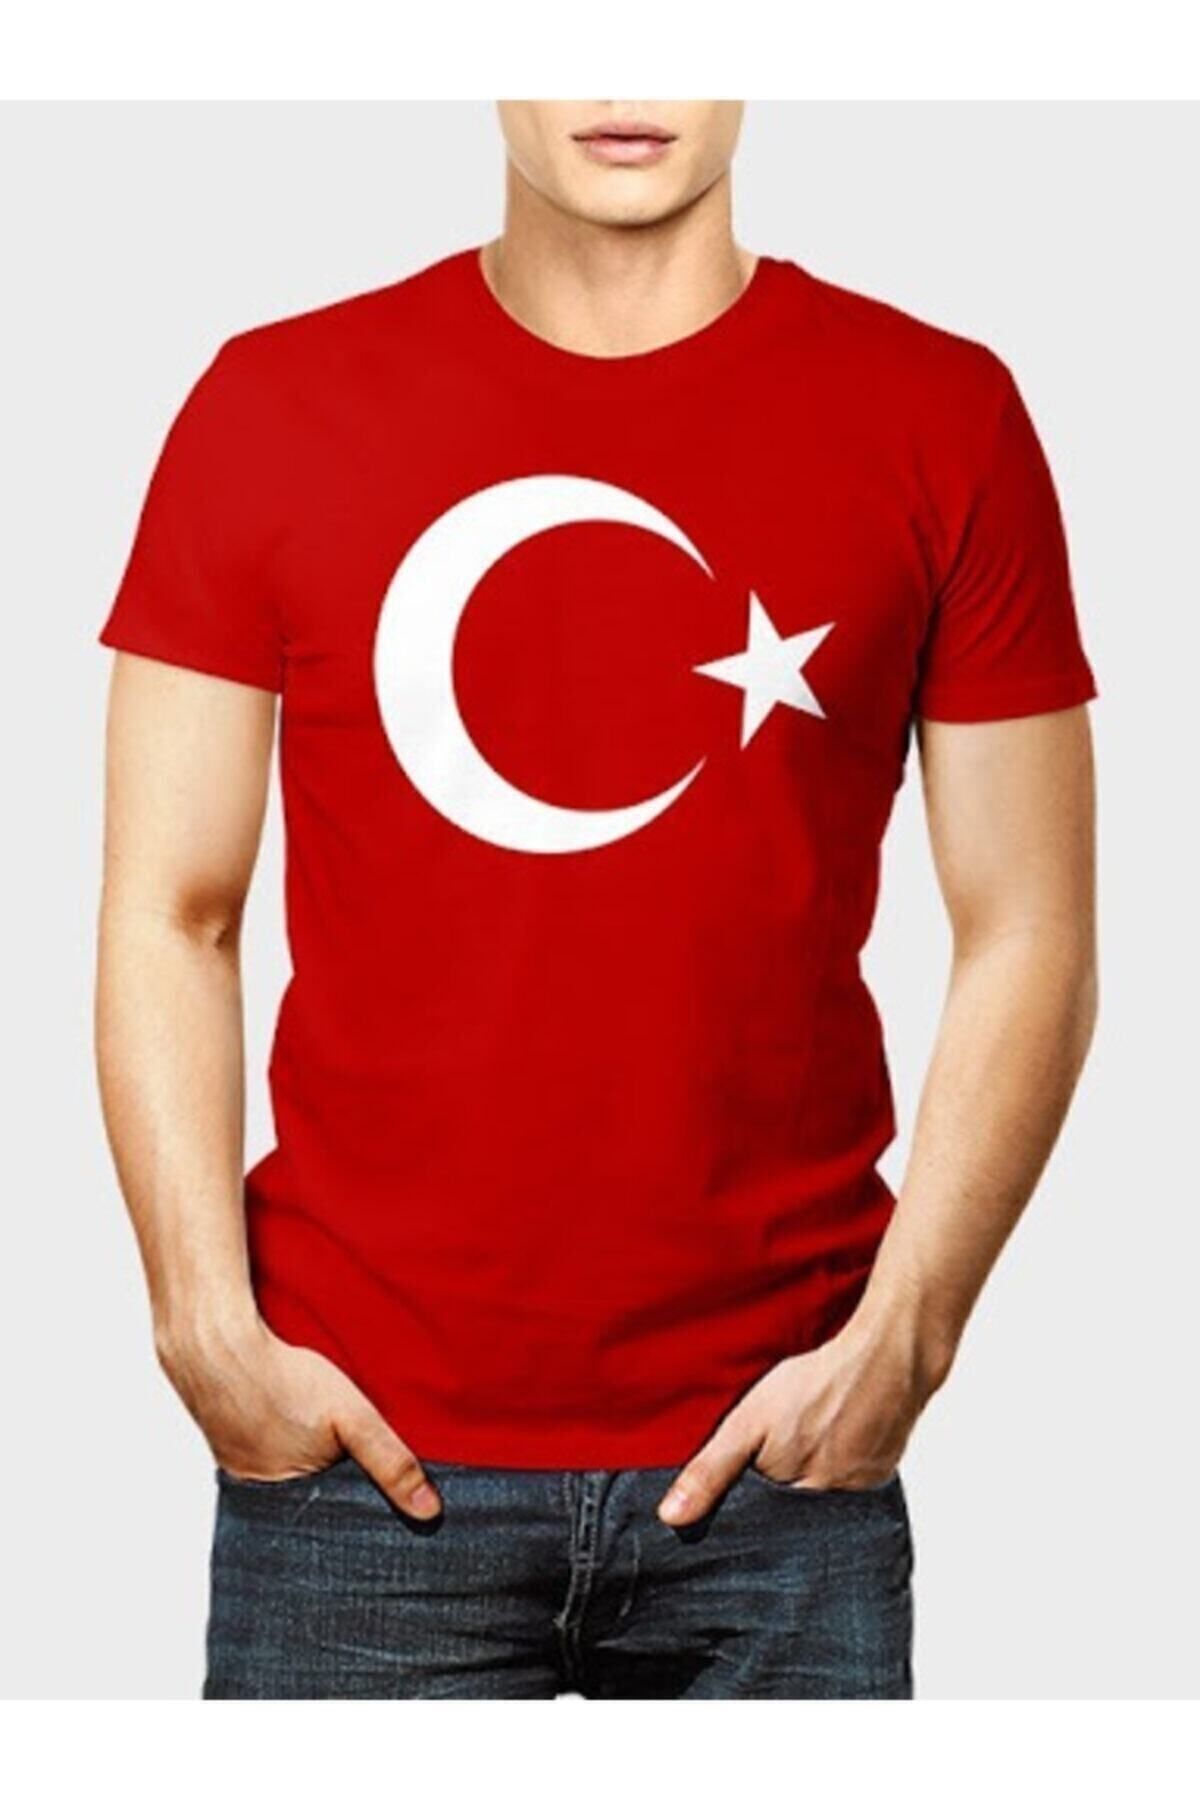 SEVLOVE Unisex Kırmızı Türk Bayraklı T-shirt